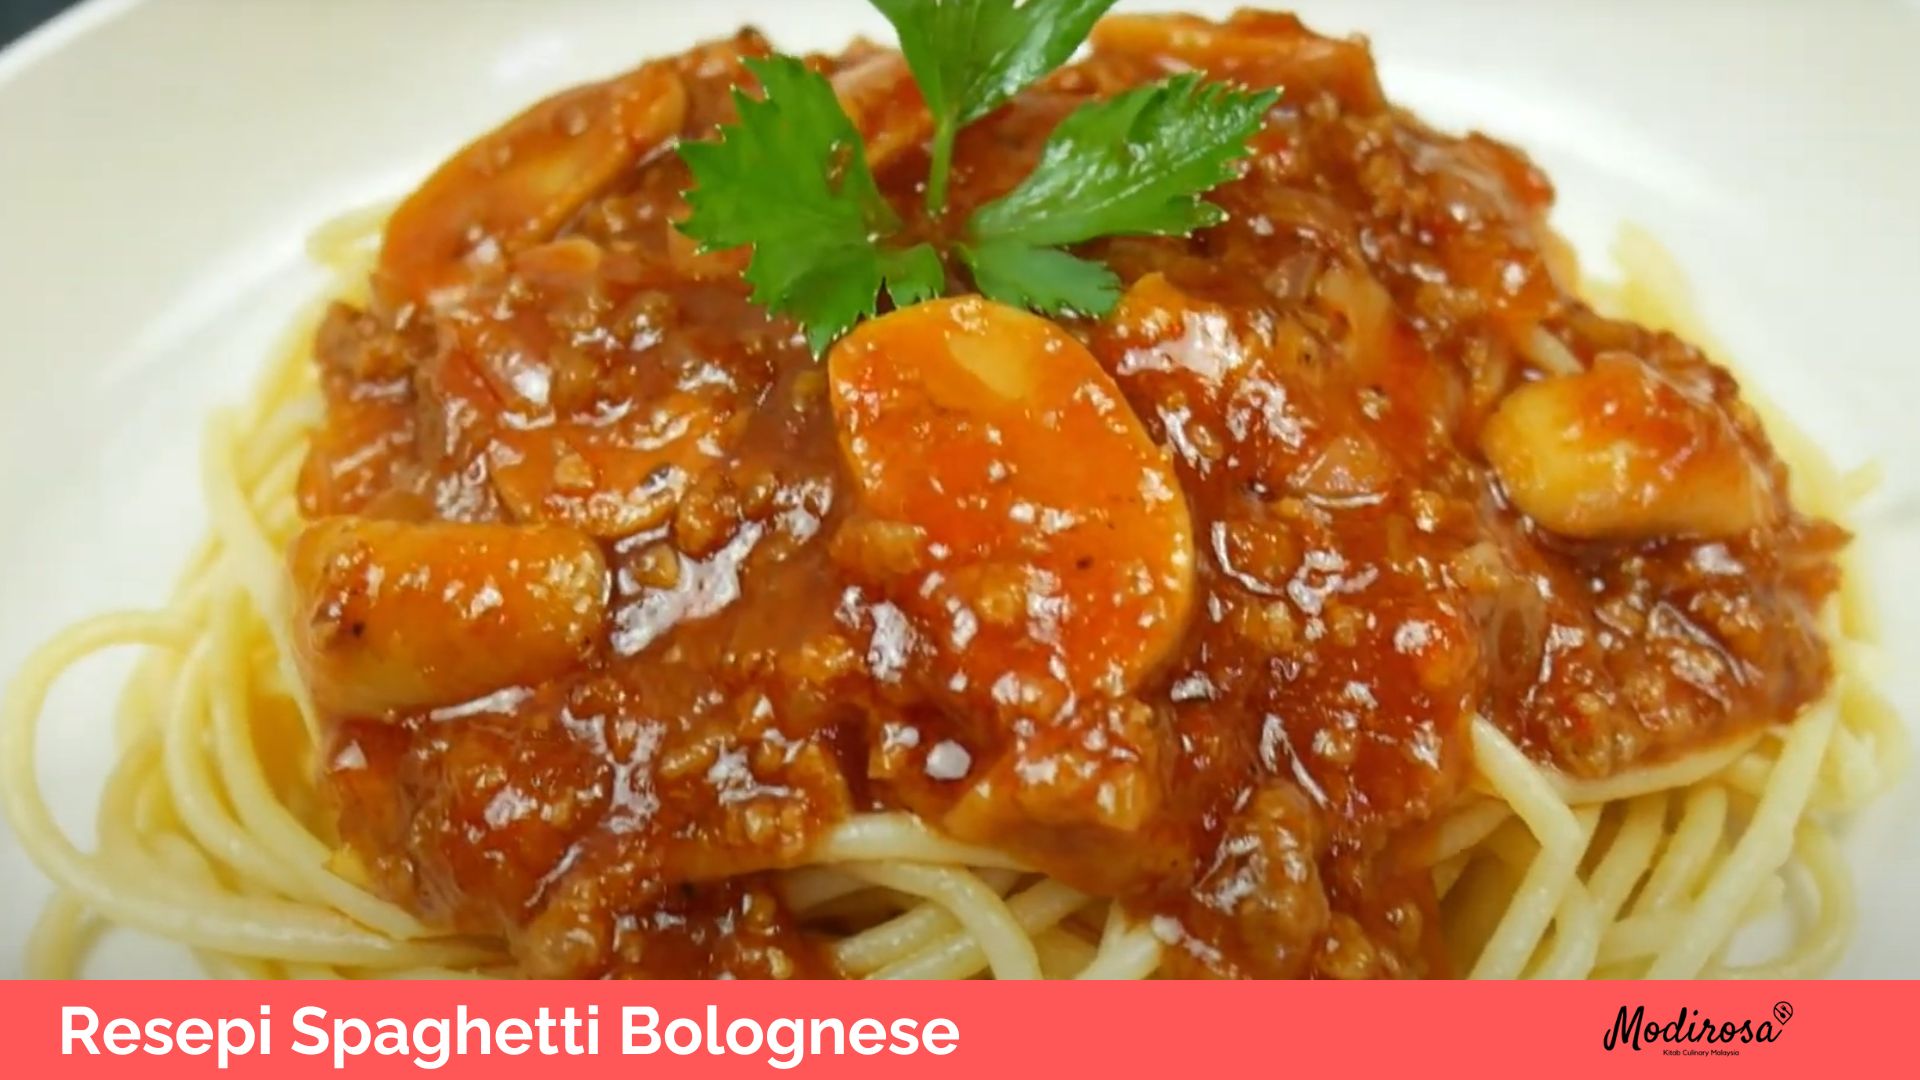 Resepi Spaghetti Bolognese